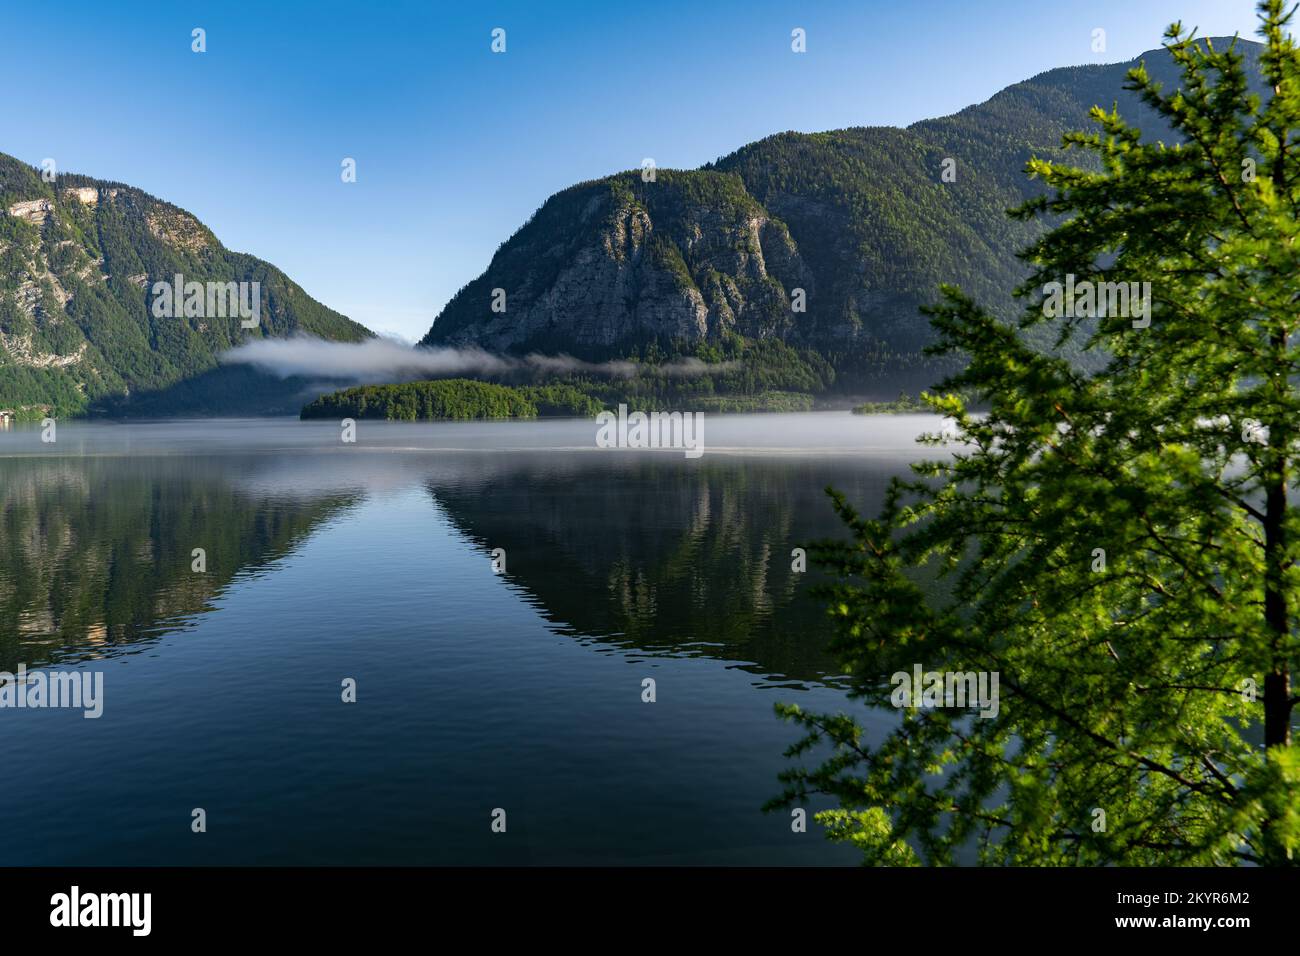 Morgenaufnahme des Hallstatt-Sees und der Kalksteinalpen, die sich im Wasser spiegeln Stockfoto